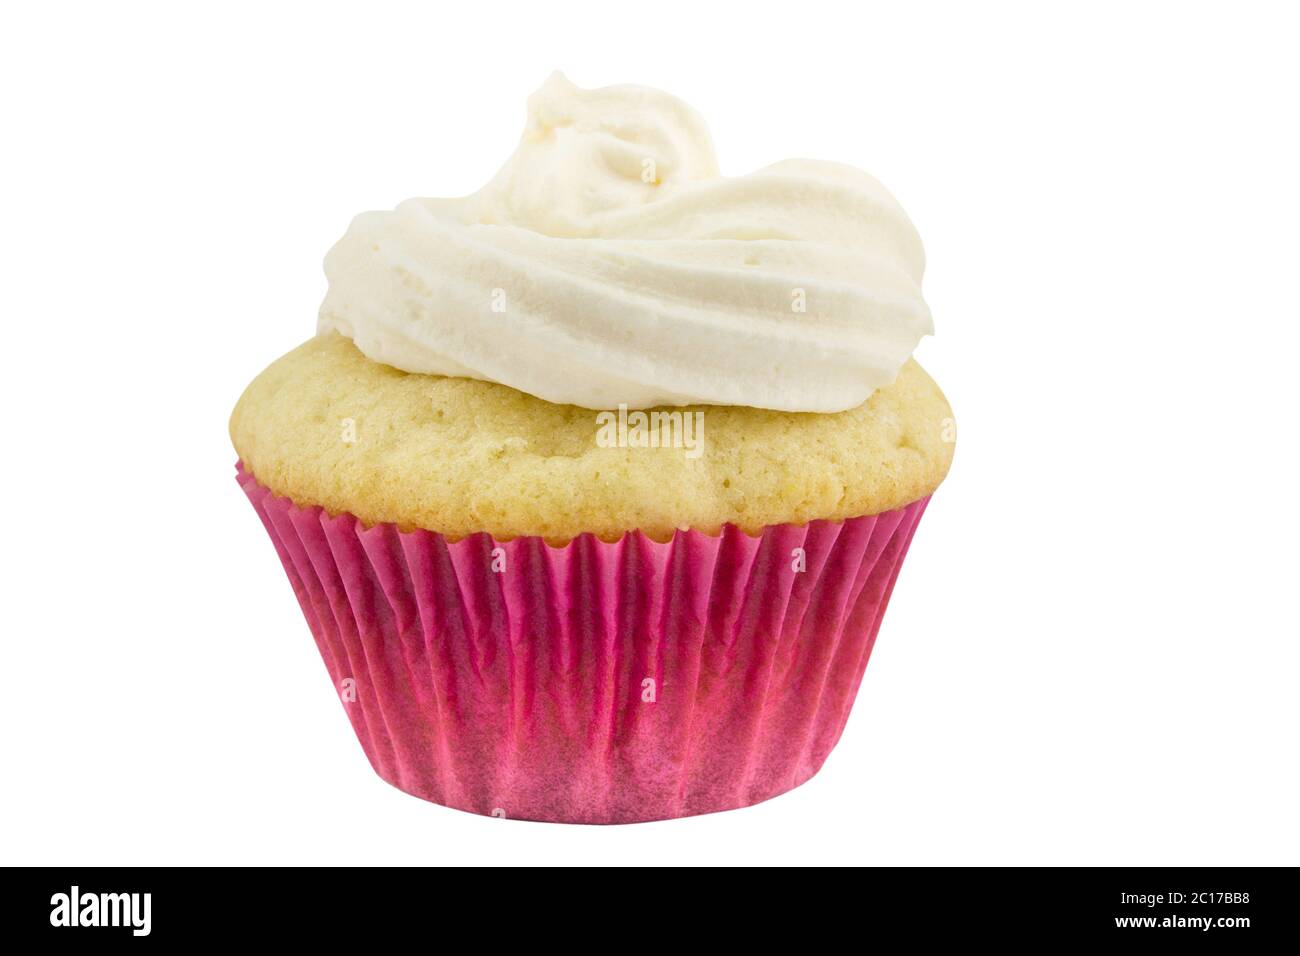 Uno rustico spugna di vaniglia Cup cake in carta rosa caso isolato su sfondo bianco Foto Stock